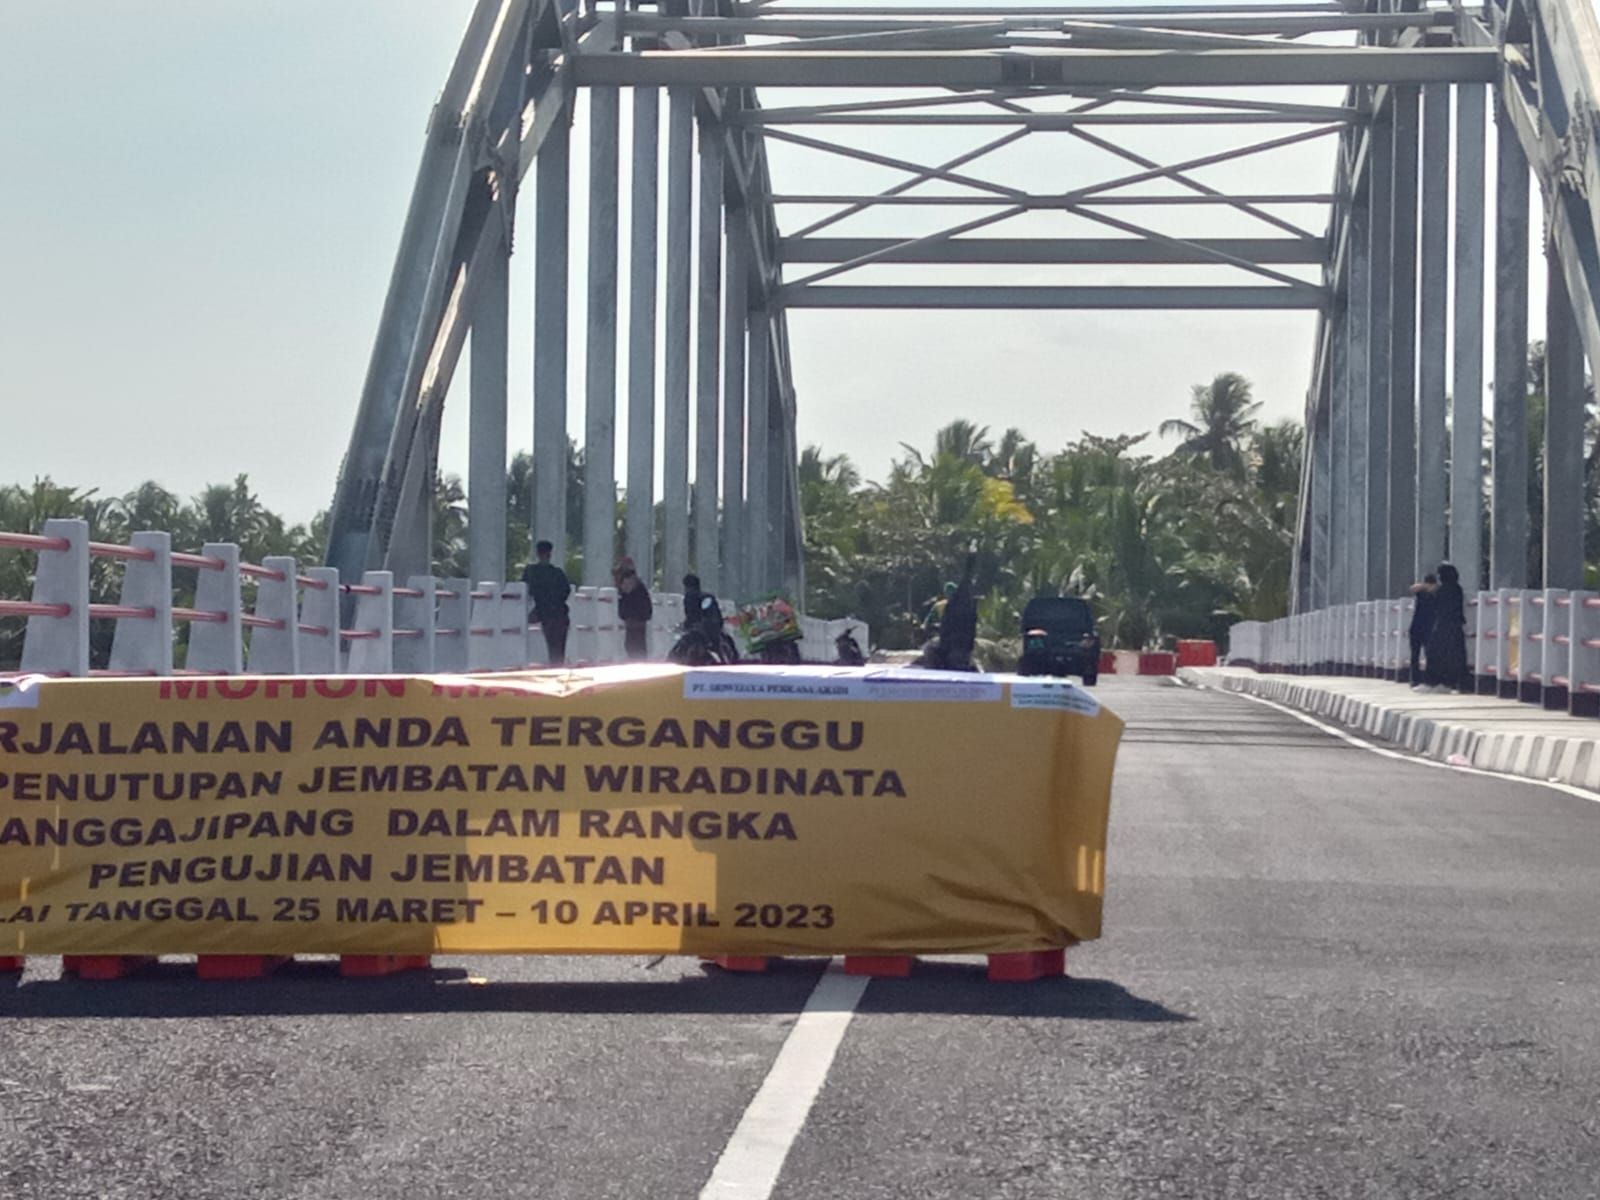 Jembatan Wiradinata Rangga Jipang Pangandaran akan ditutup sementara. Foto diambil Jumat 24 Maret 2023.*